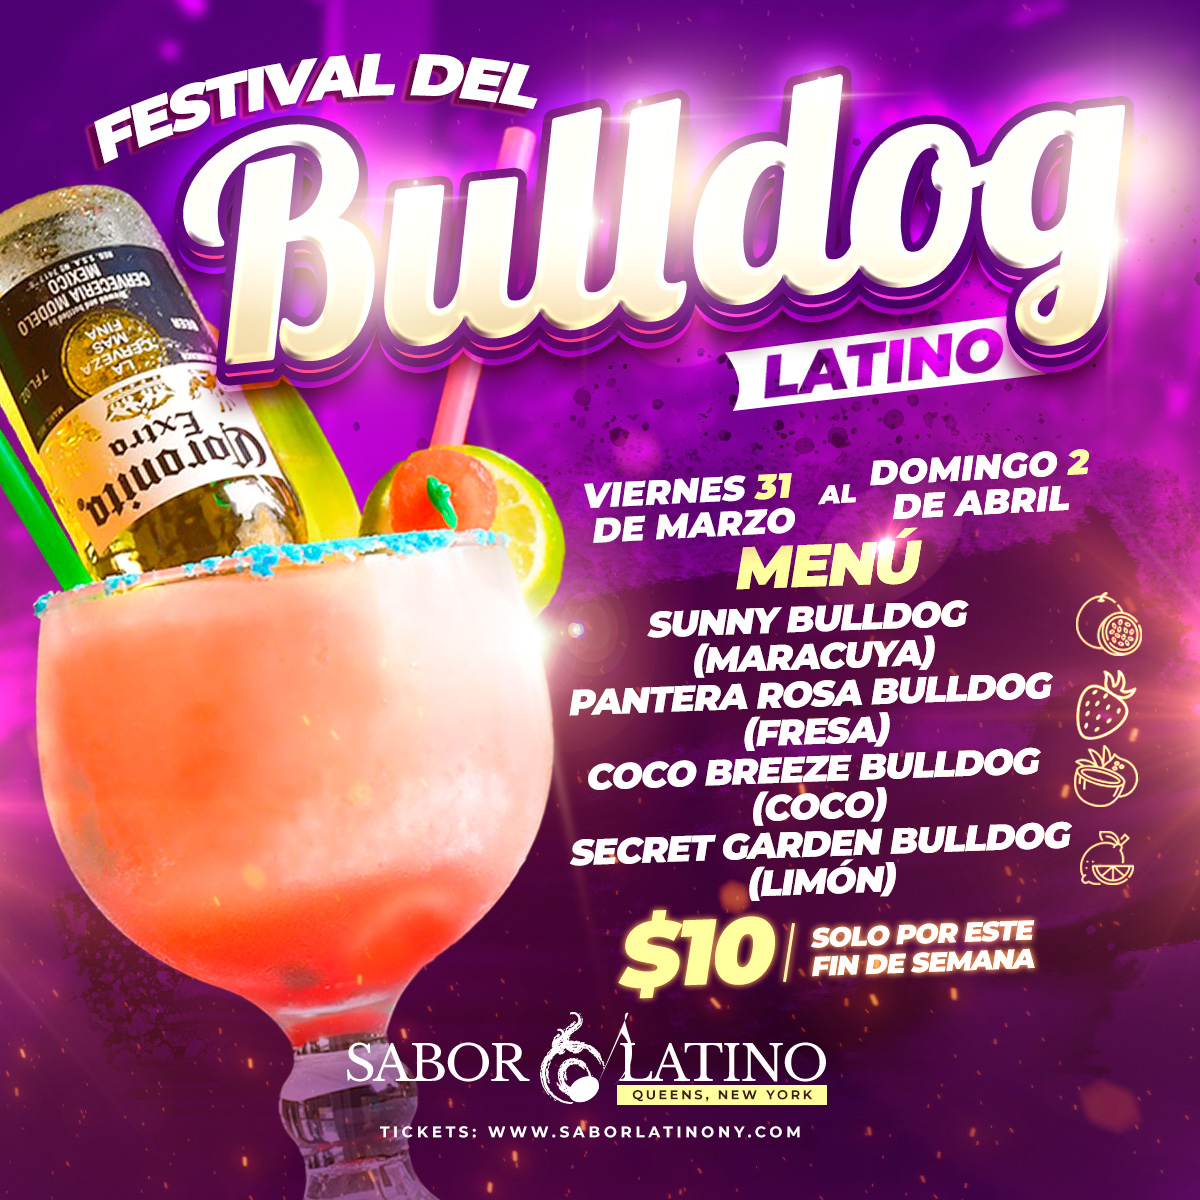 Festival del Bulldog Latino